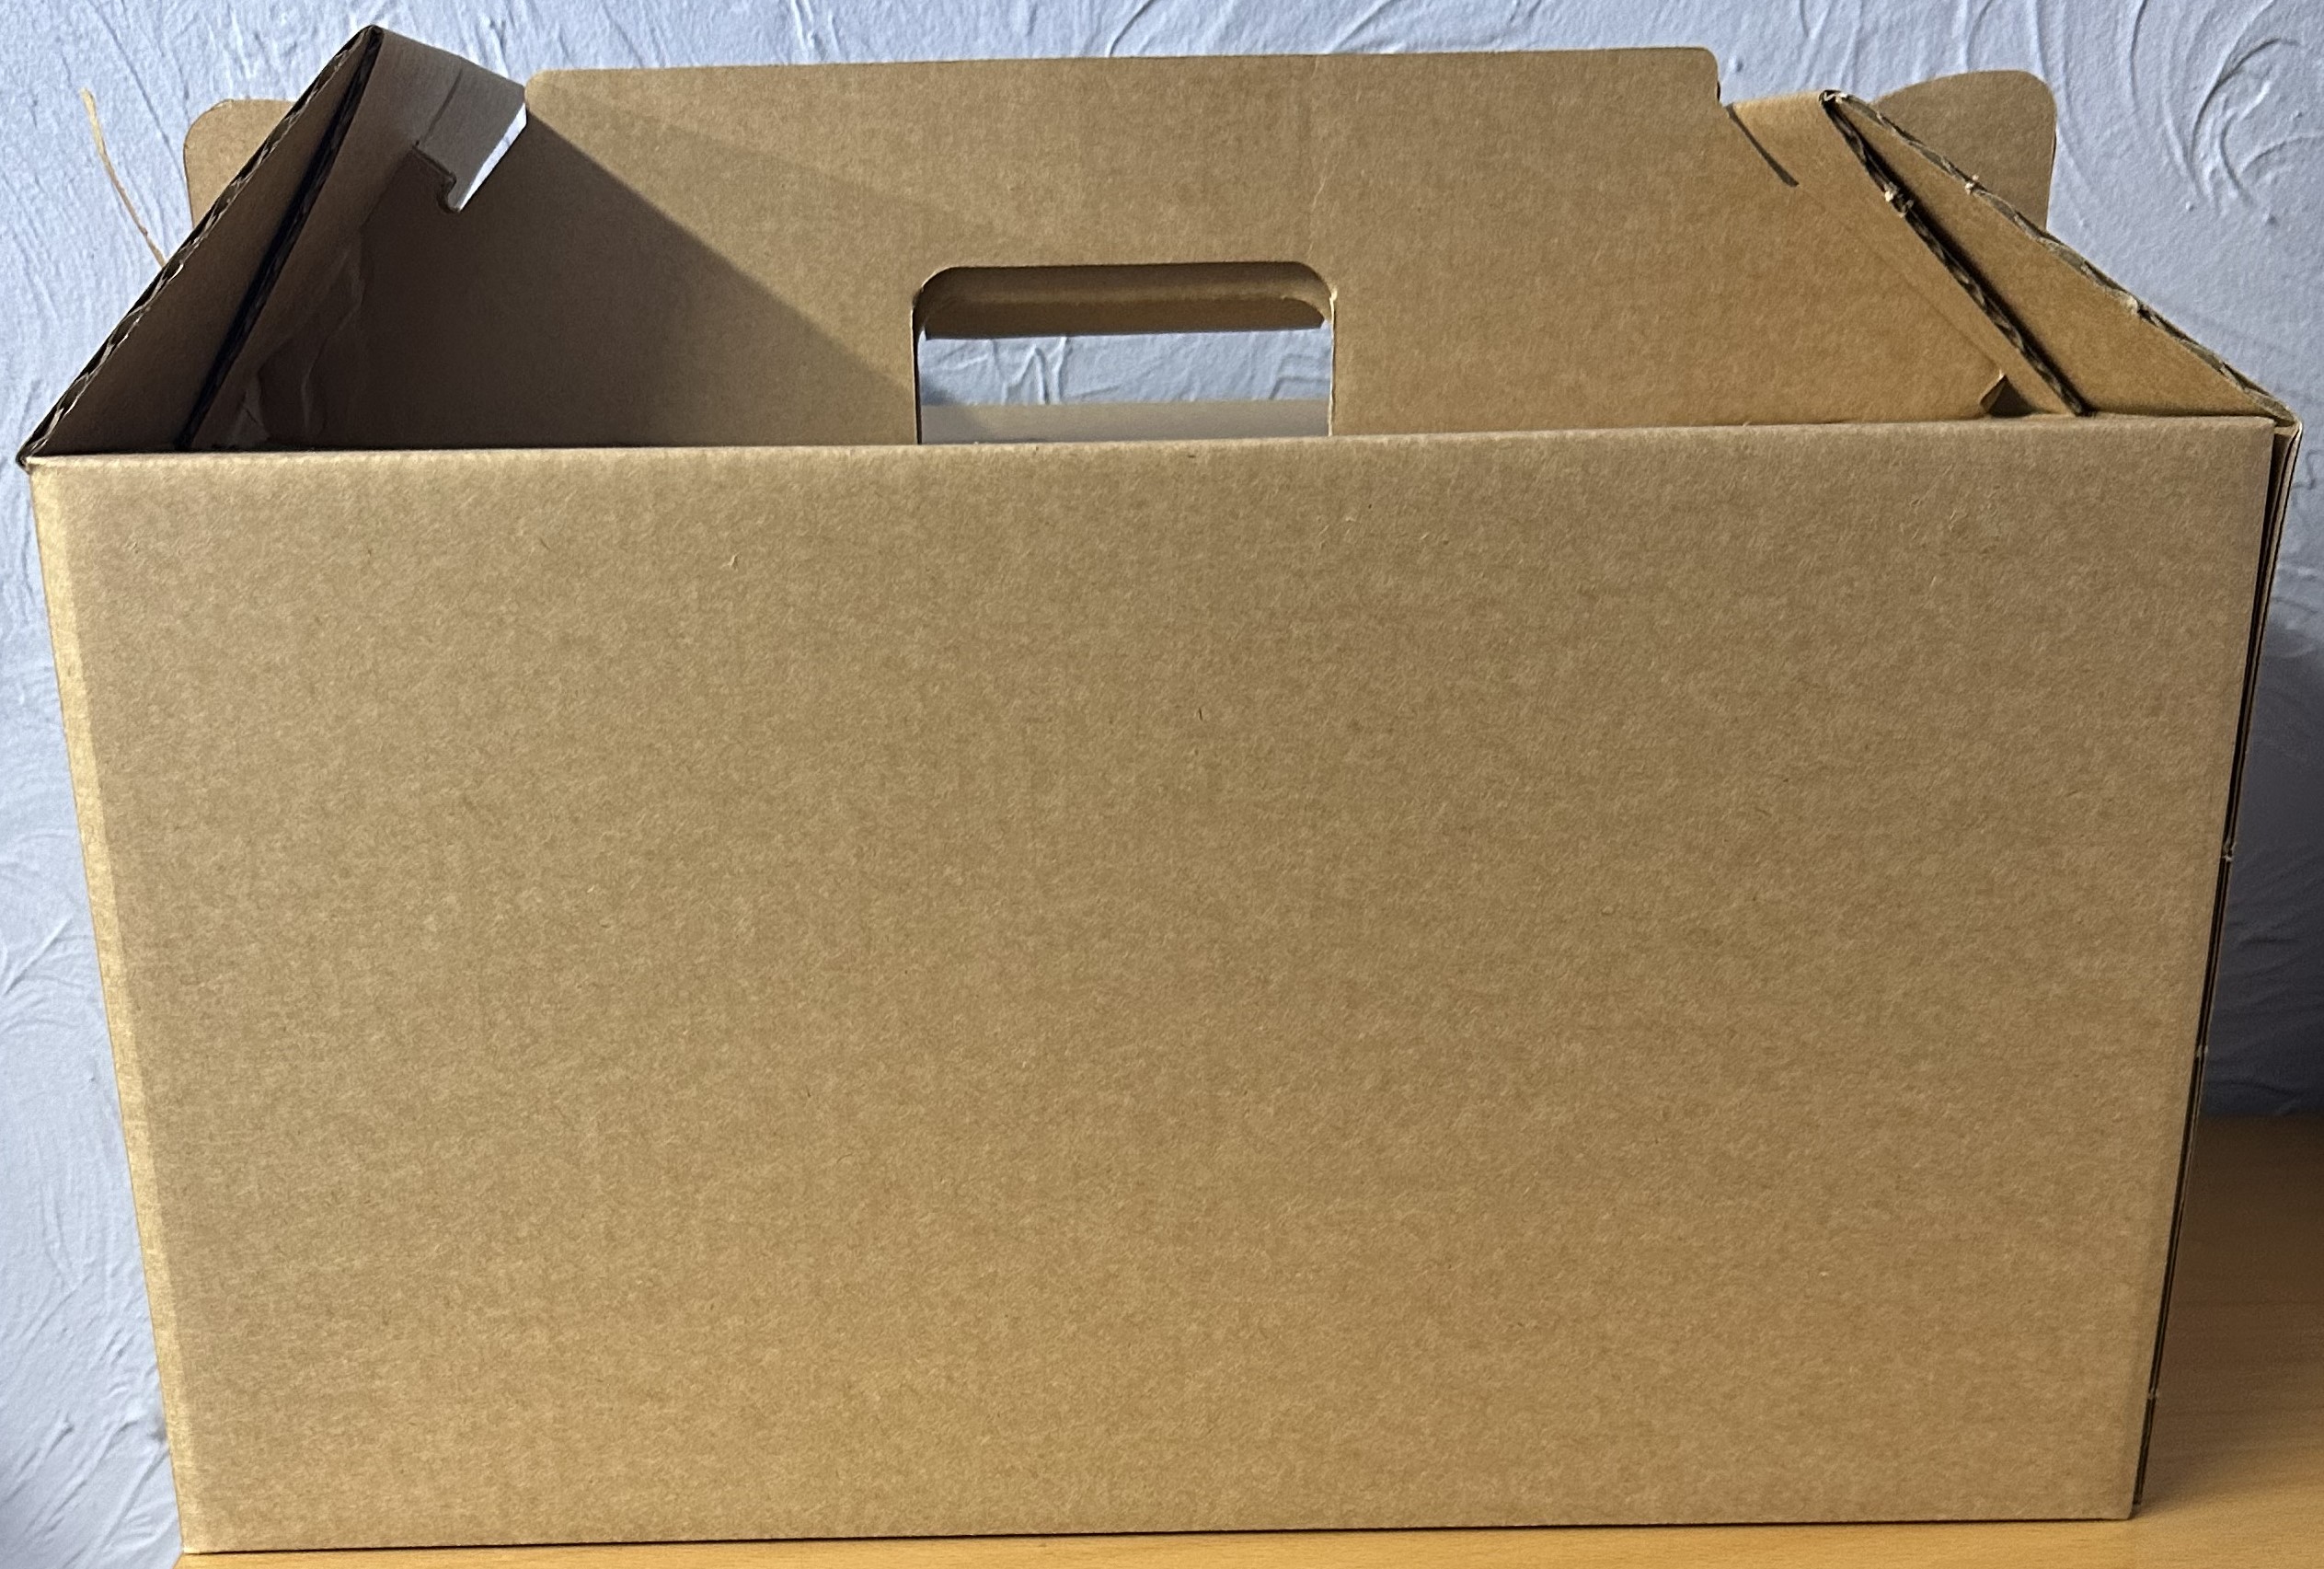 Navy Blue Gourmet Shipping Box, 8x8x3, 6 Pack